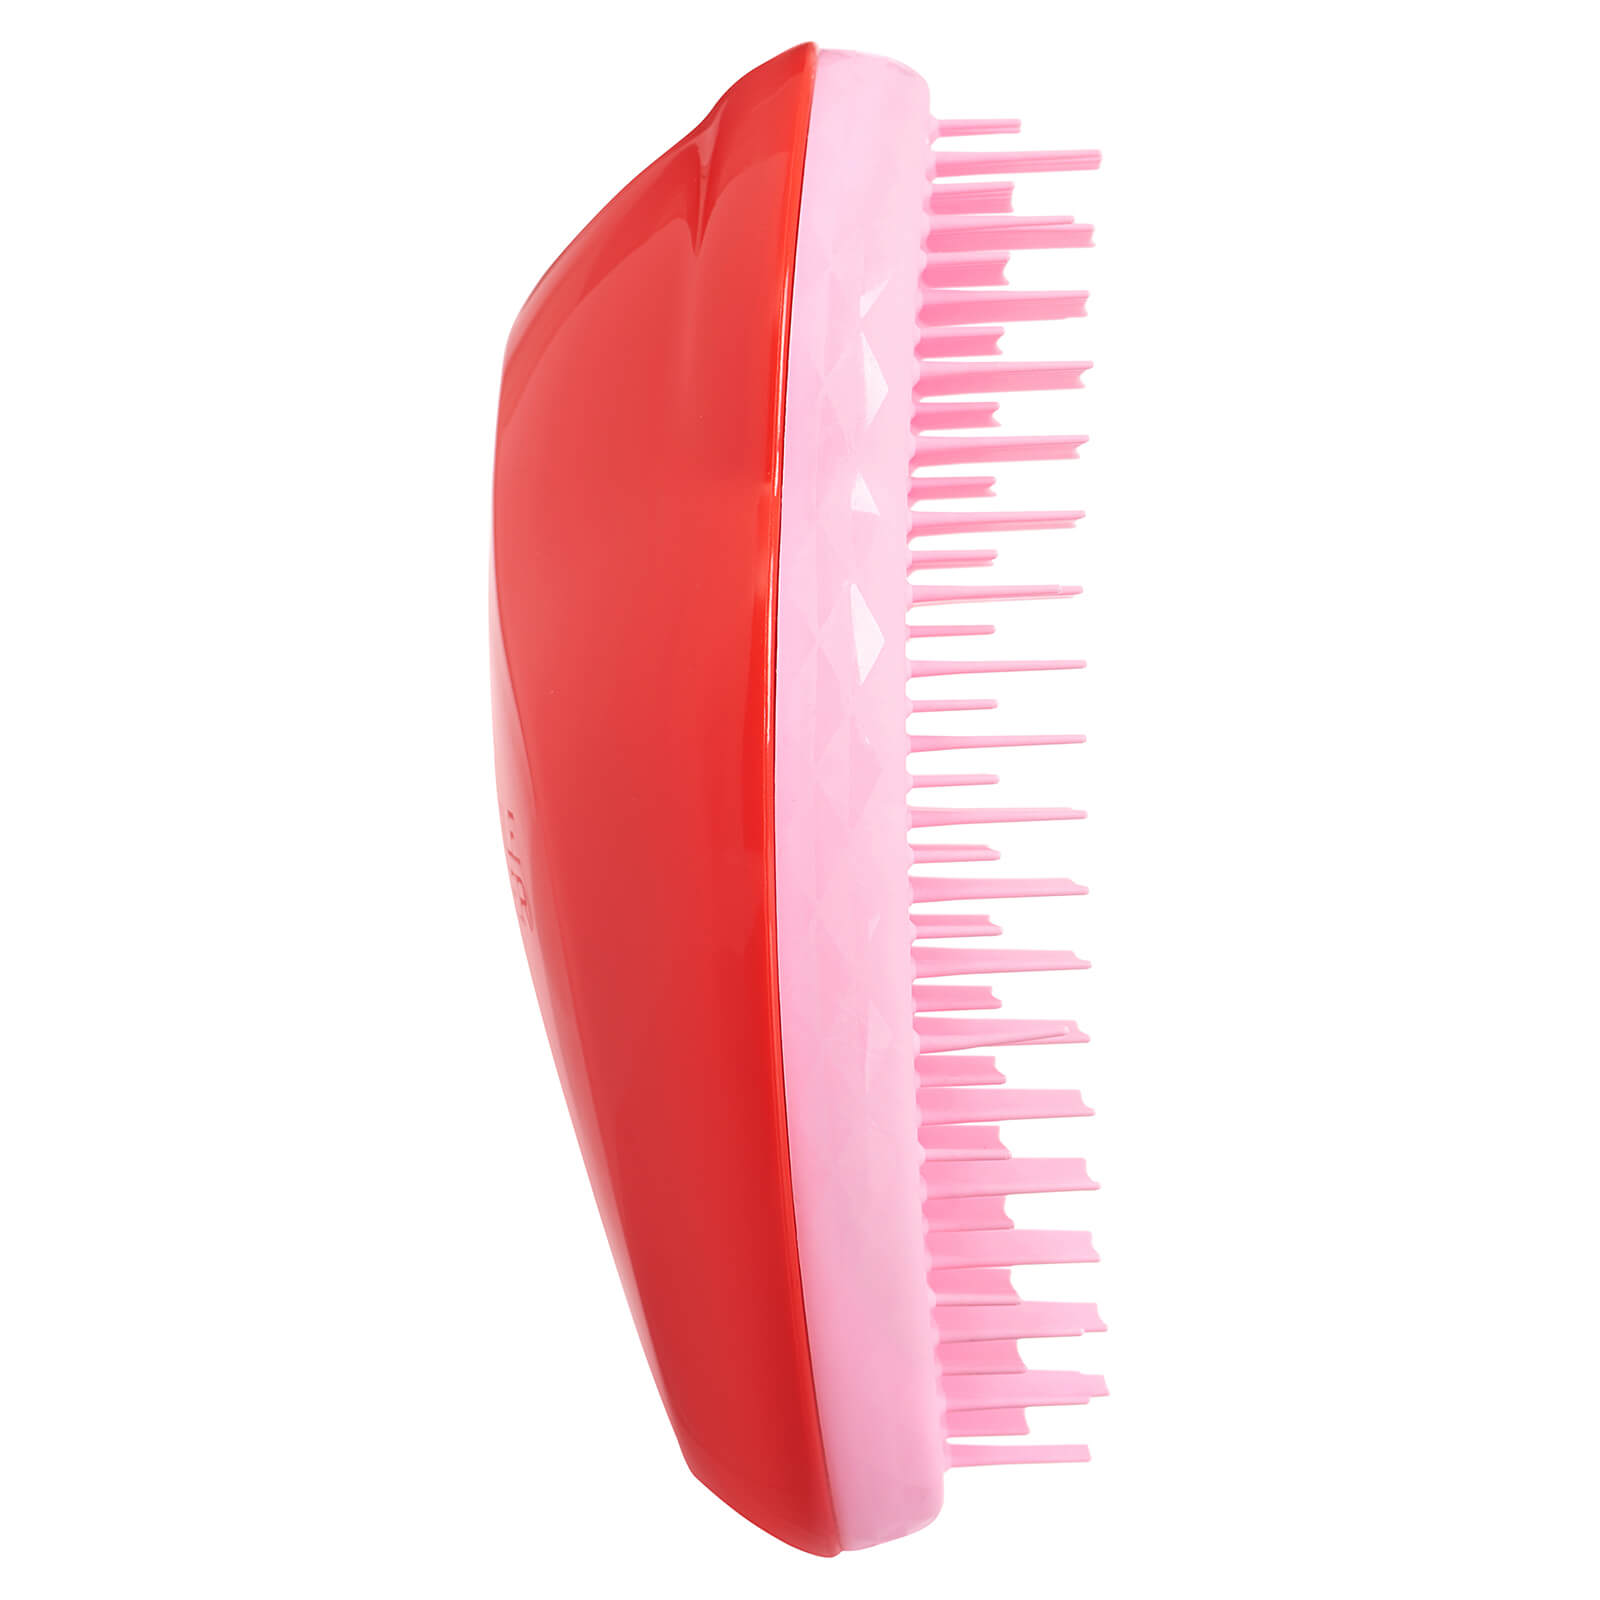 Купить Расческа Tangle Teezer The Original Detangling Hair Brush — Strawberry Passion